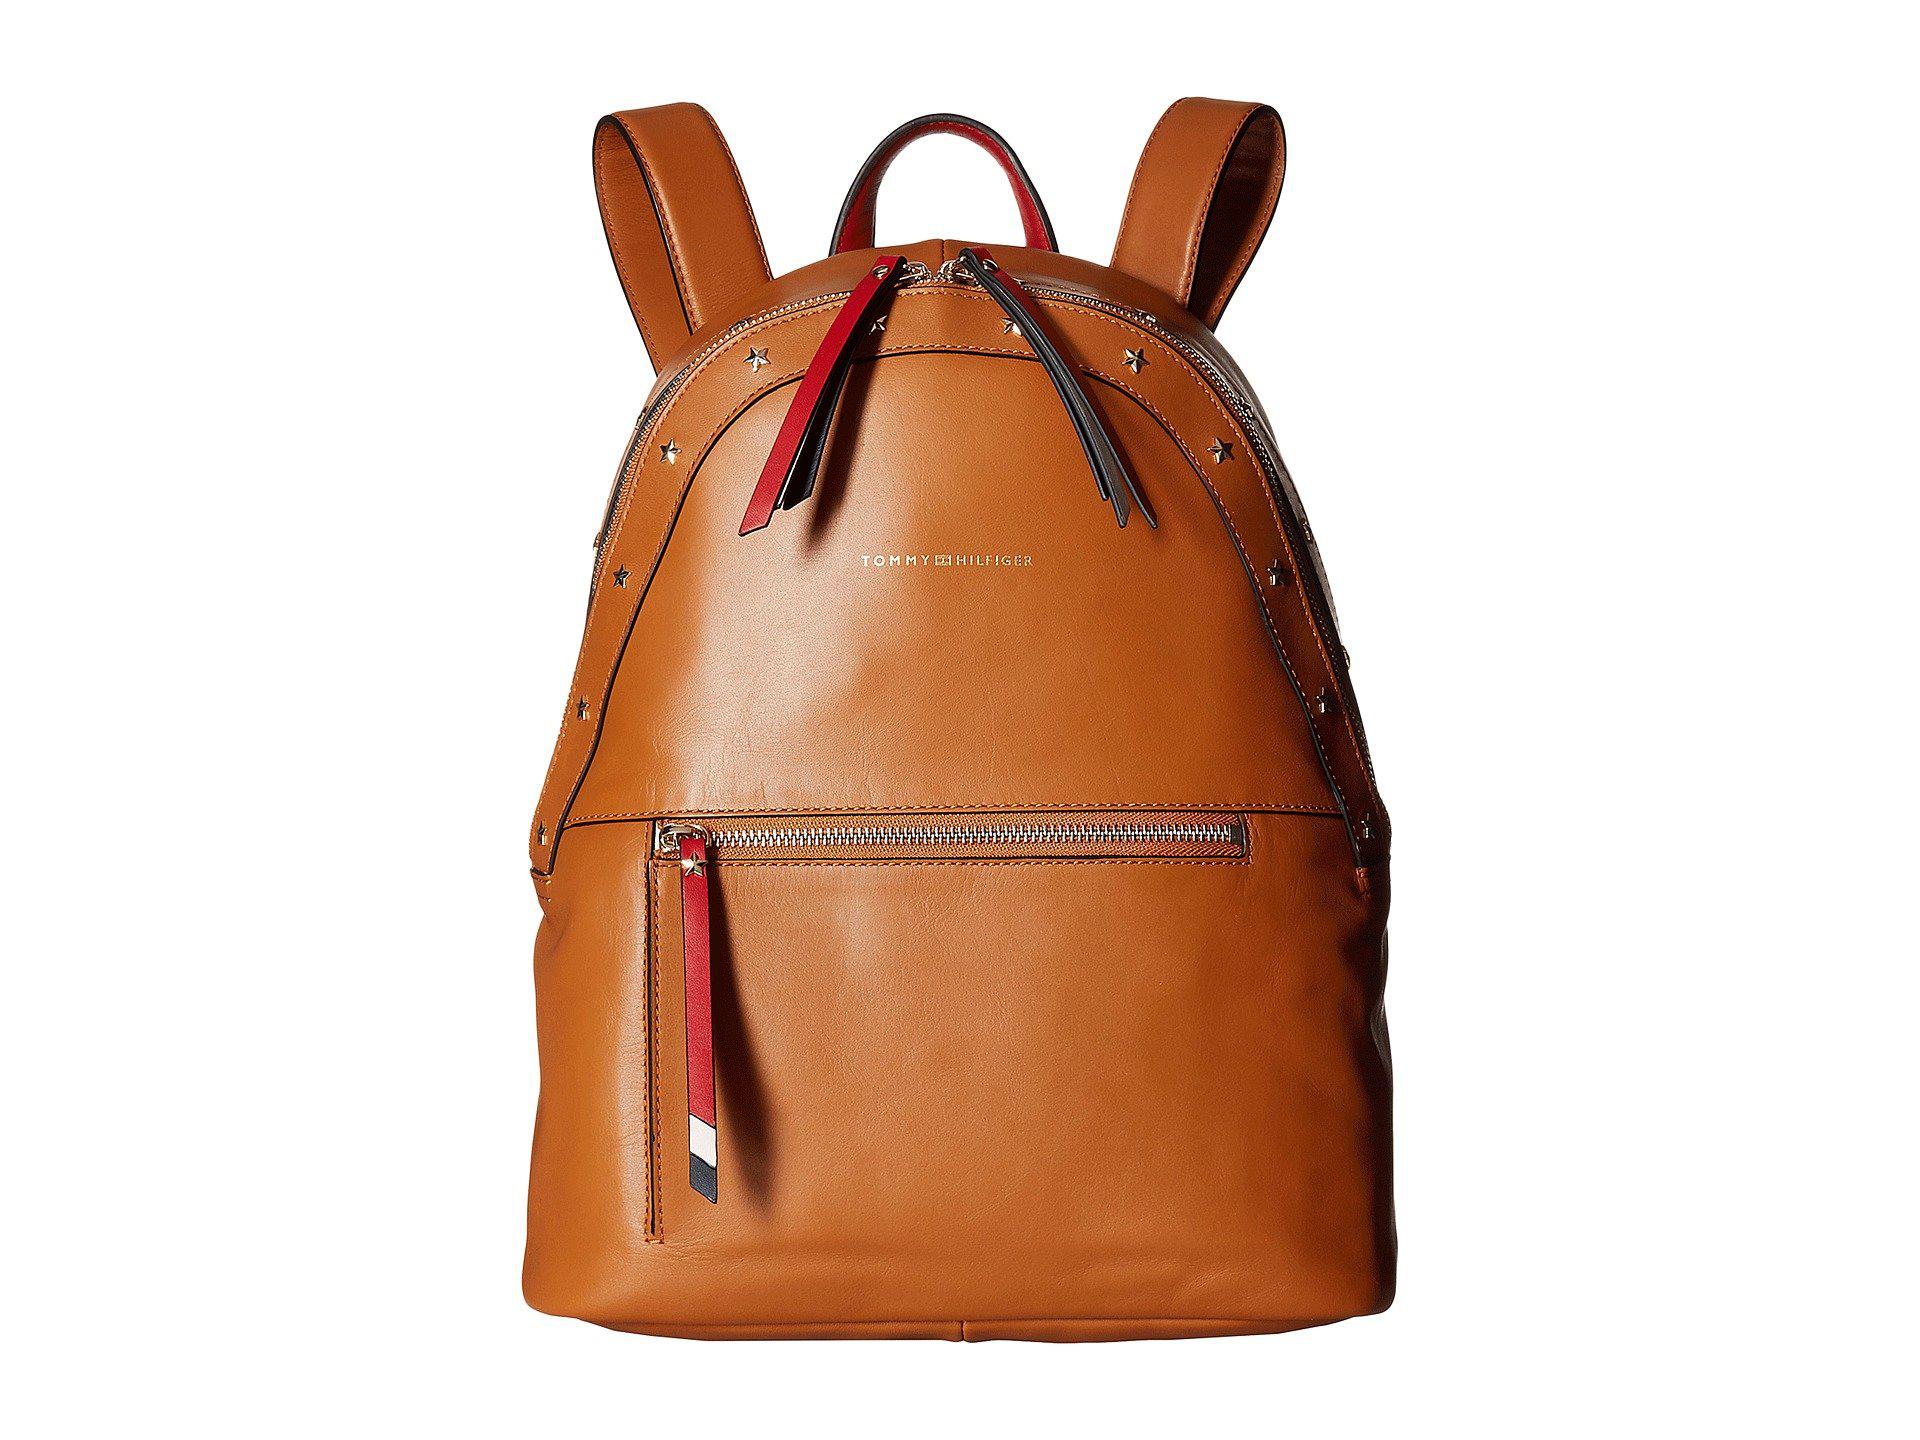 tommy hilfiger backpack brown